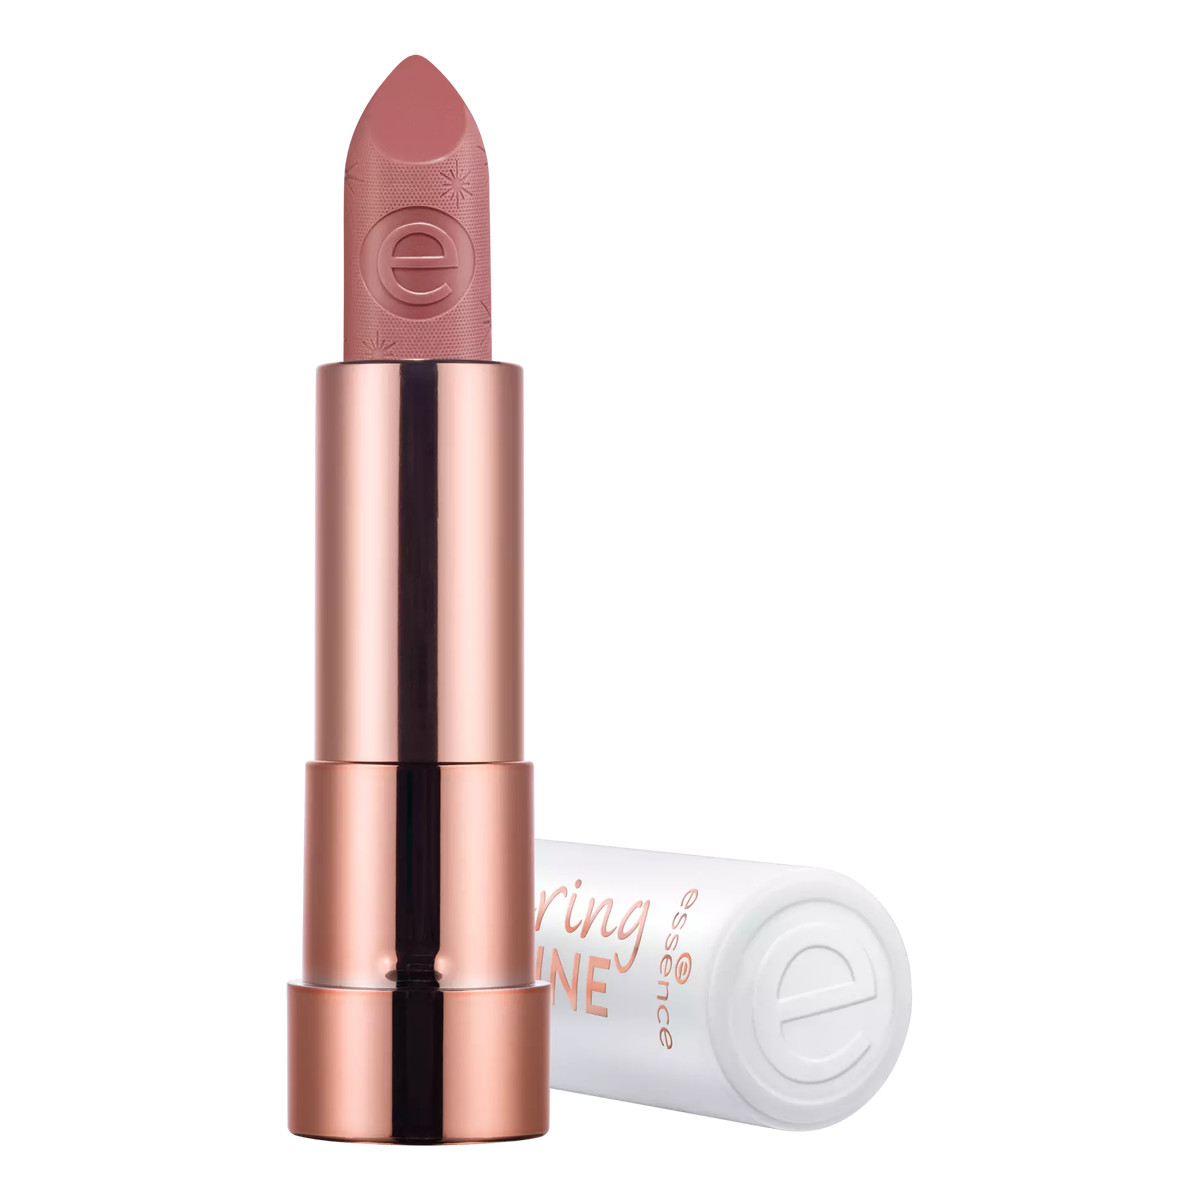 Essence Caring SHINE vegan collagen lipstick Pielęgnacyjna szminka z wegańskim kolagenem 3.5g